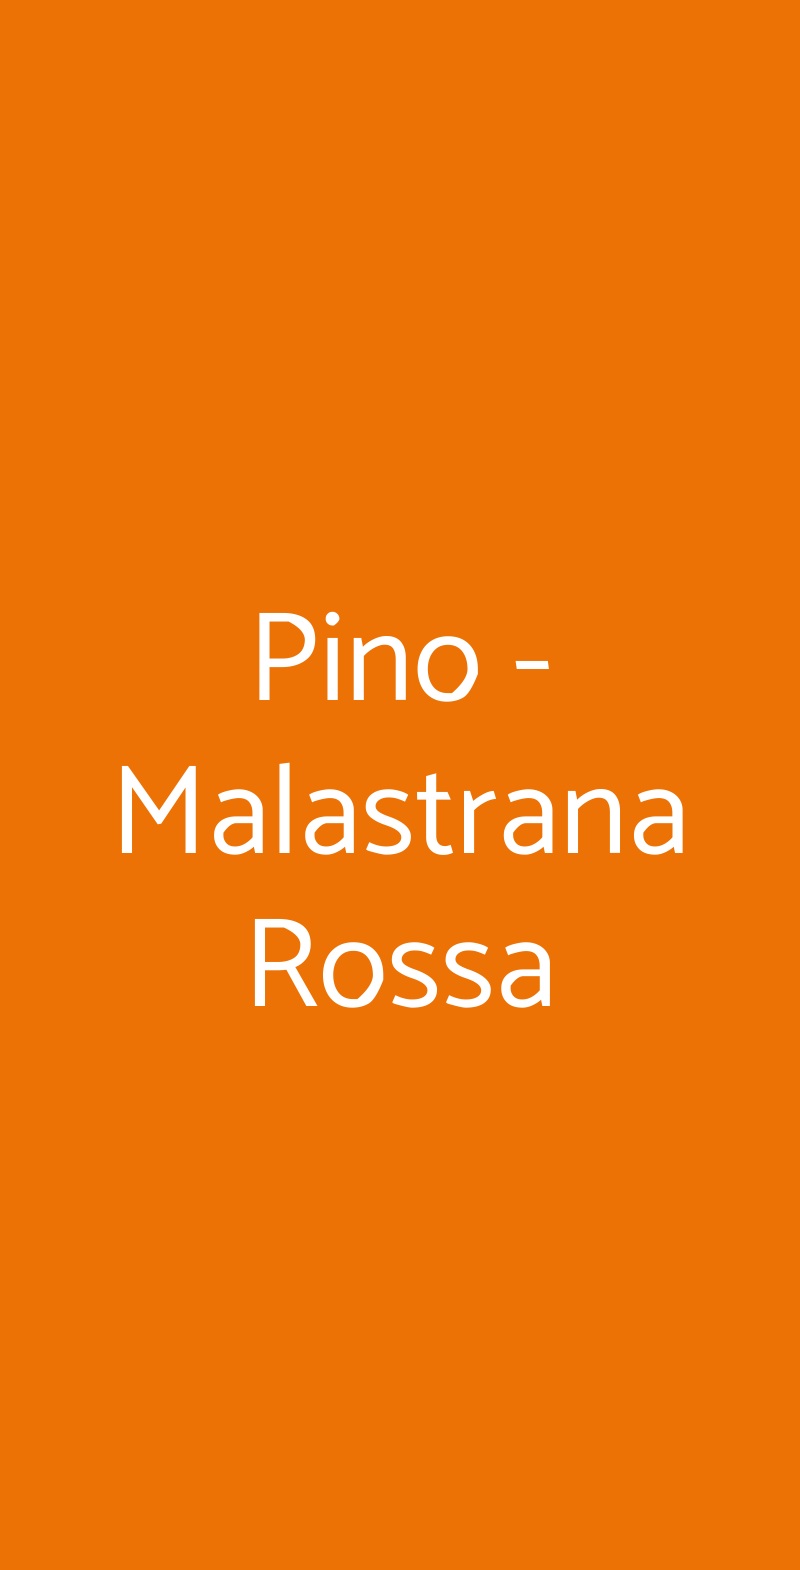 Pino - Malastrana Rossa Milano menù 1 pagina